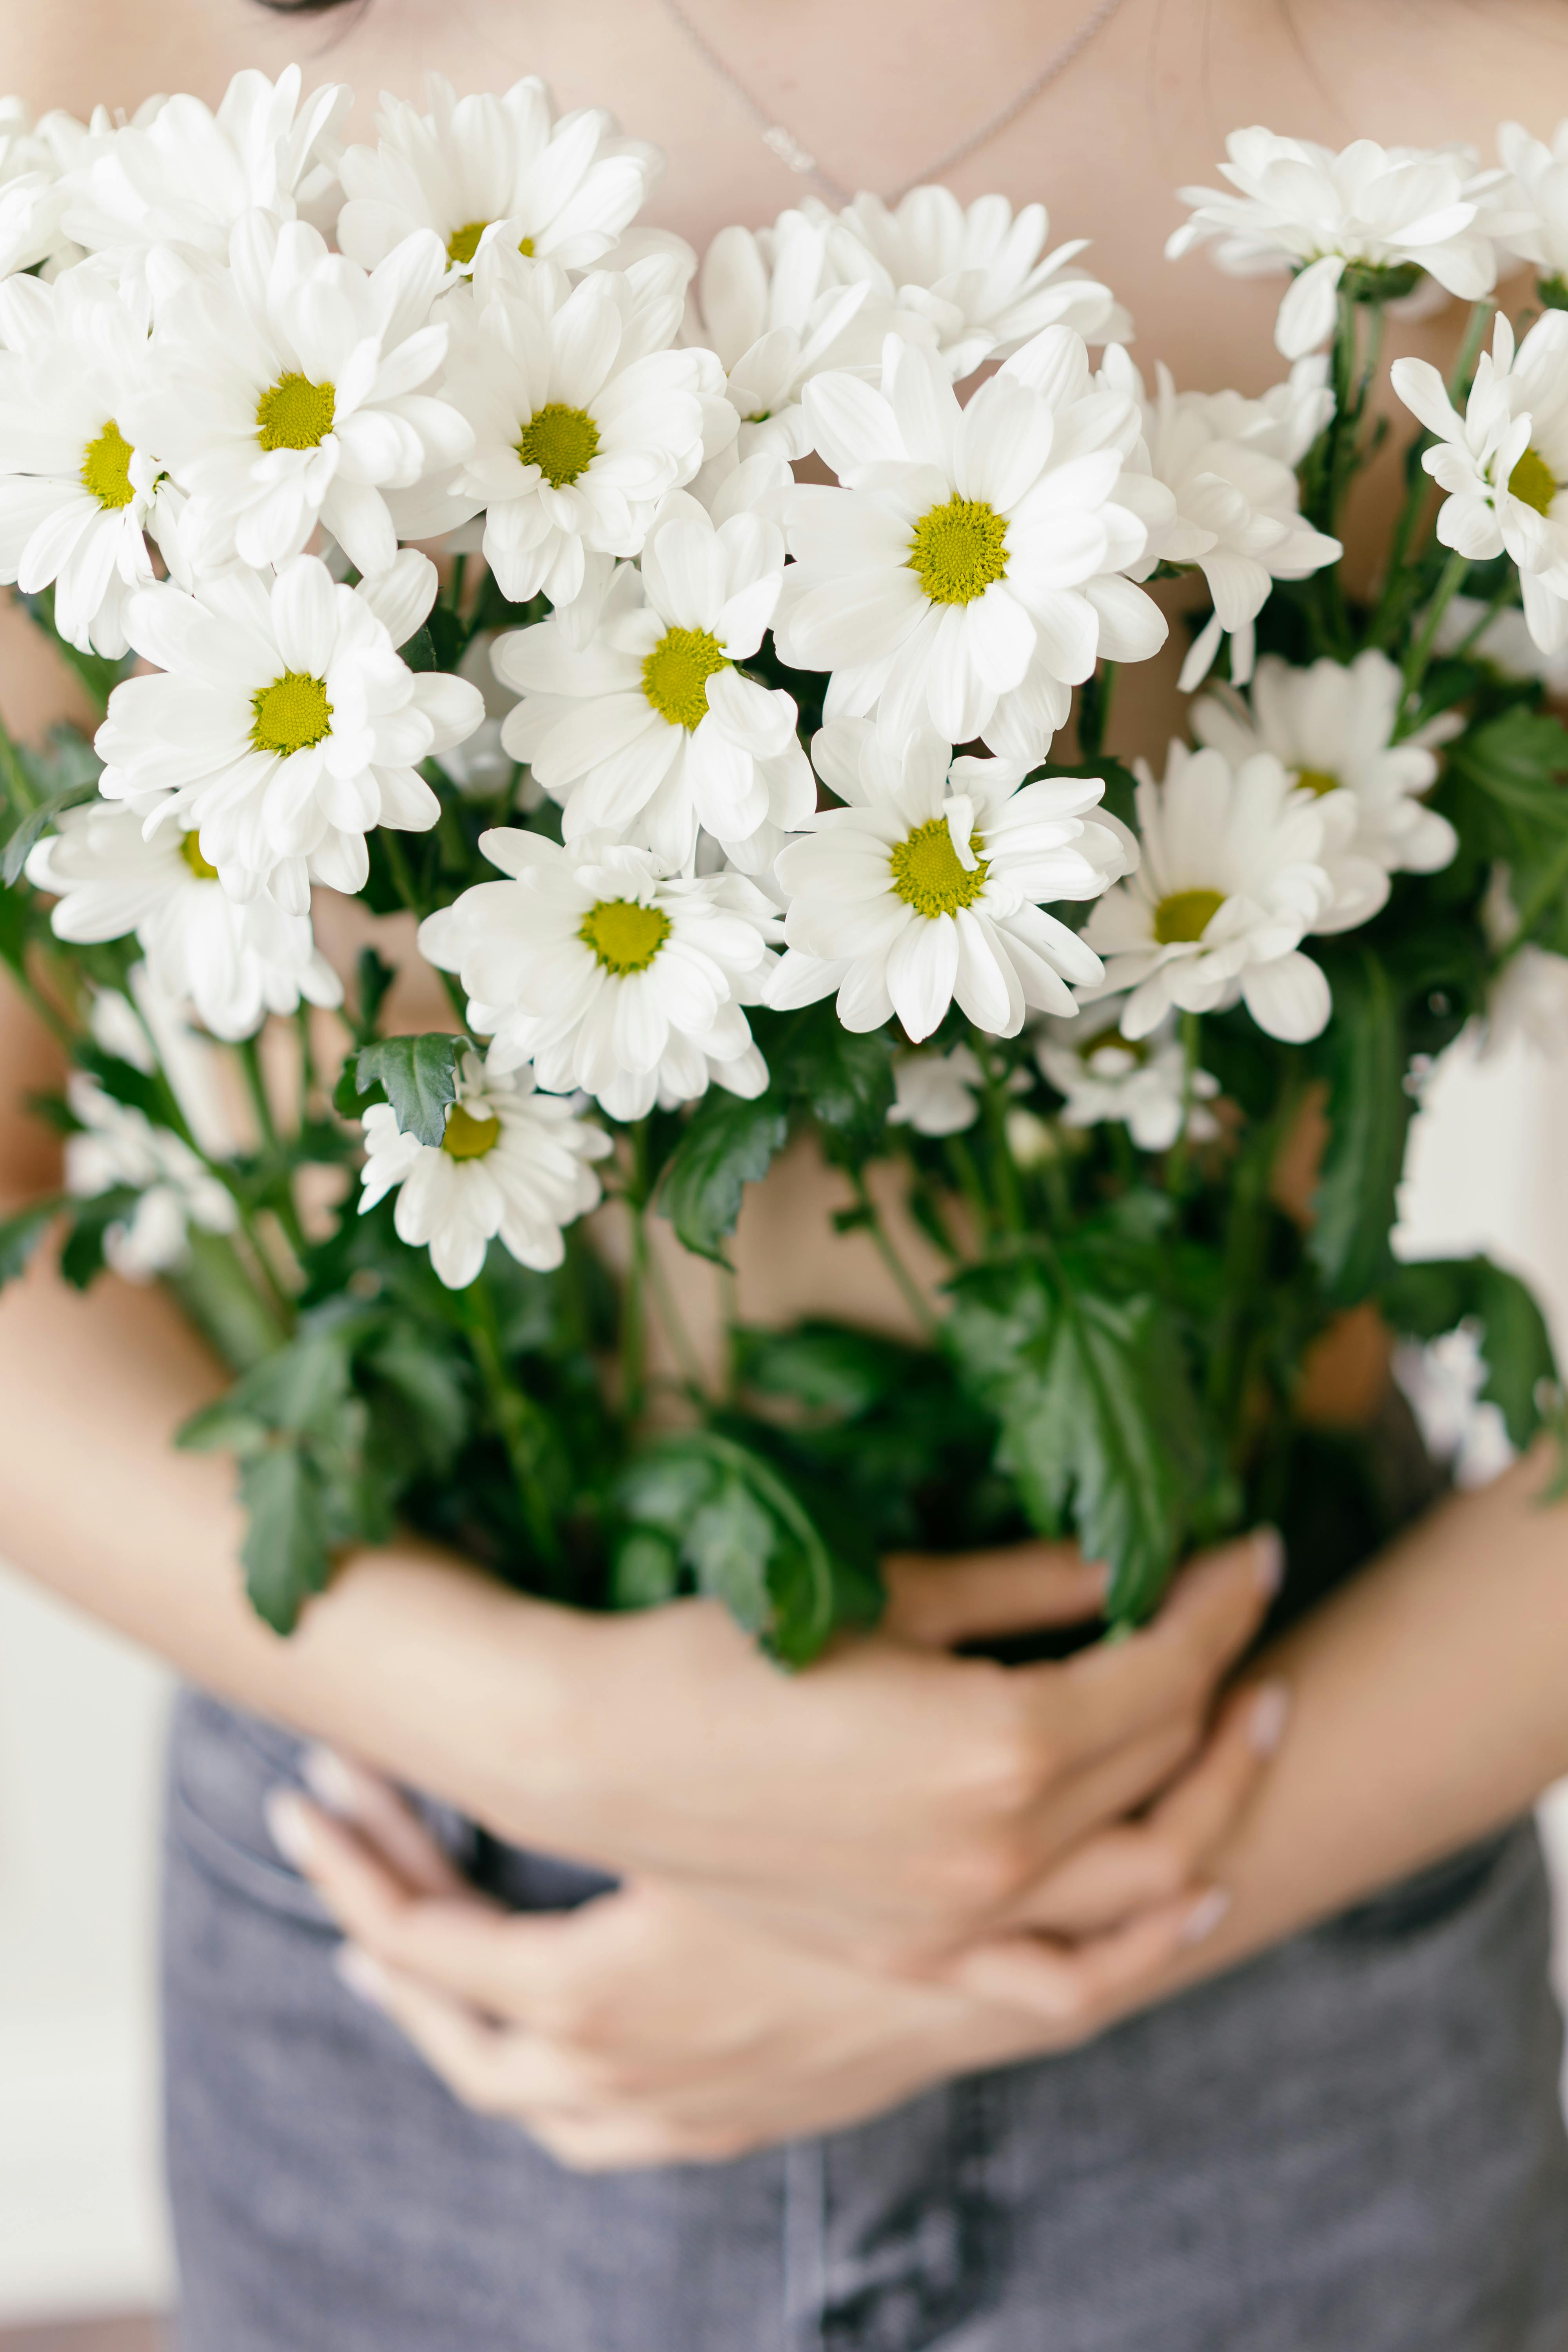 ẢNH HOA TRẮNG: Hoa trắng mang trong mình dấu ấn của sự trong sáng và tinh khiết. Hãy cùng chiêm ngưỡng vẻ đẹp yên tĩnh của những bông hoa trắng lấp lánh trong ánh nắng rực rỡ.